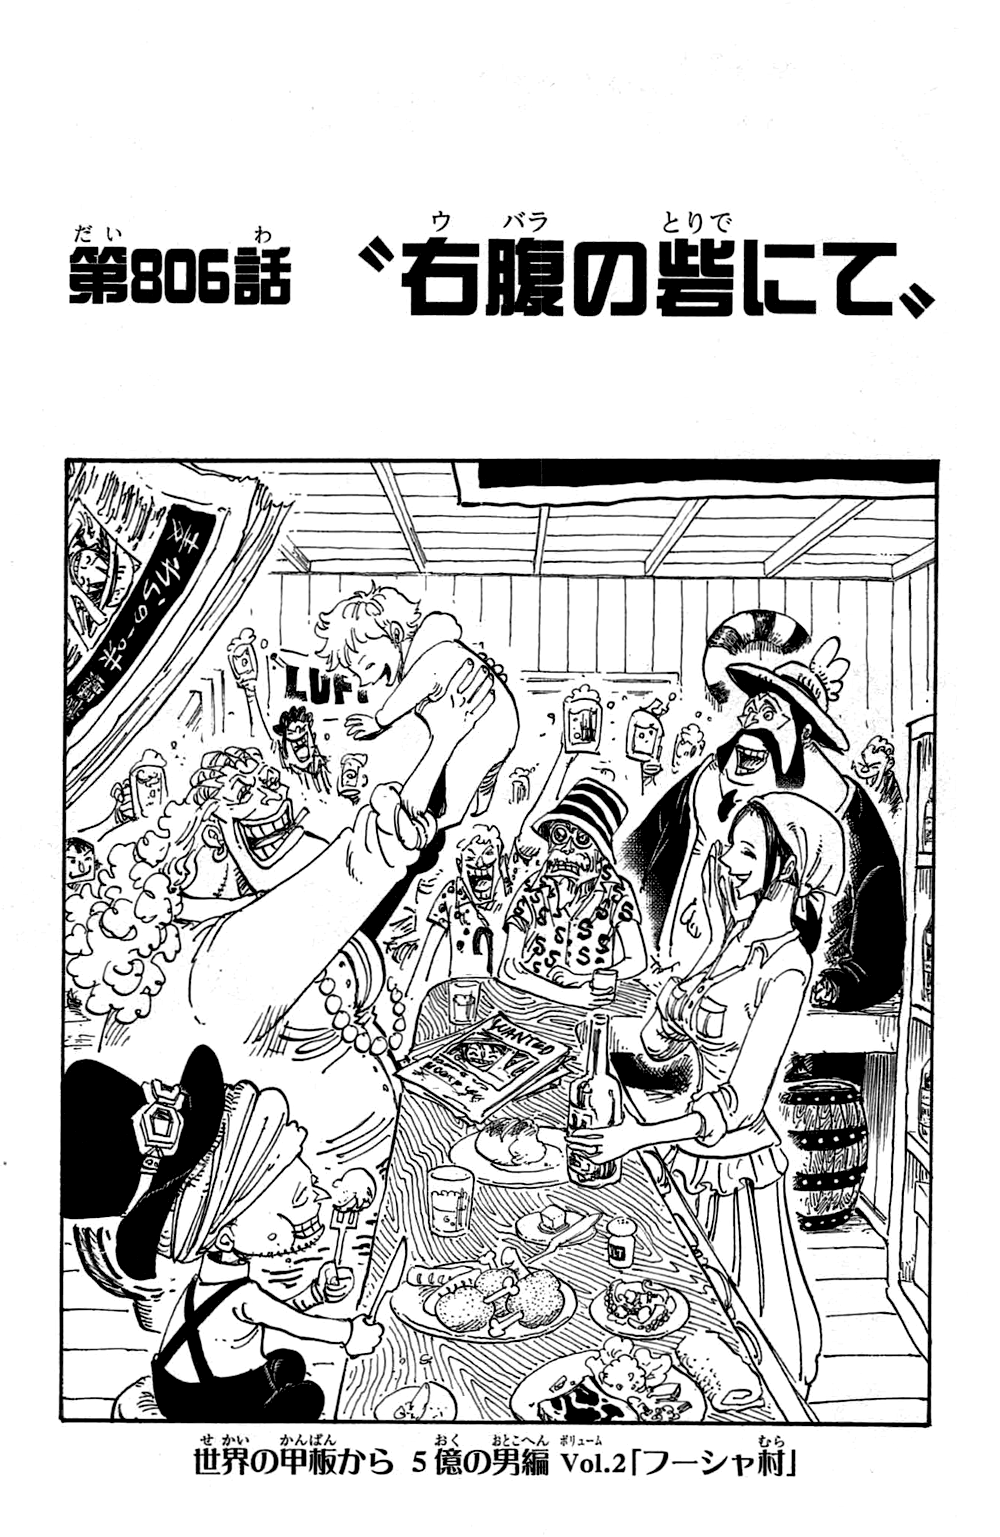 Chapter 806 One Piece Wiki Fandom